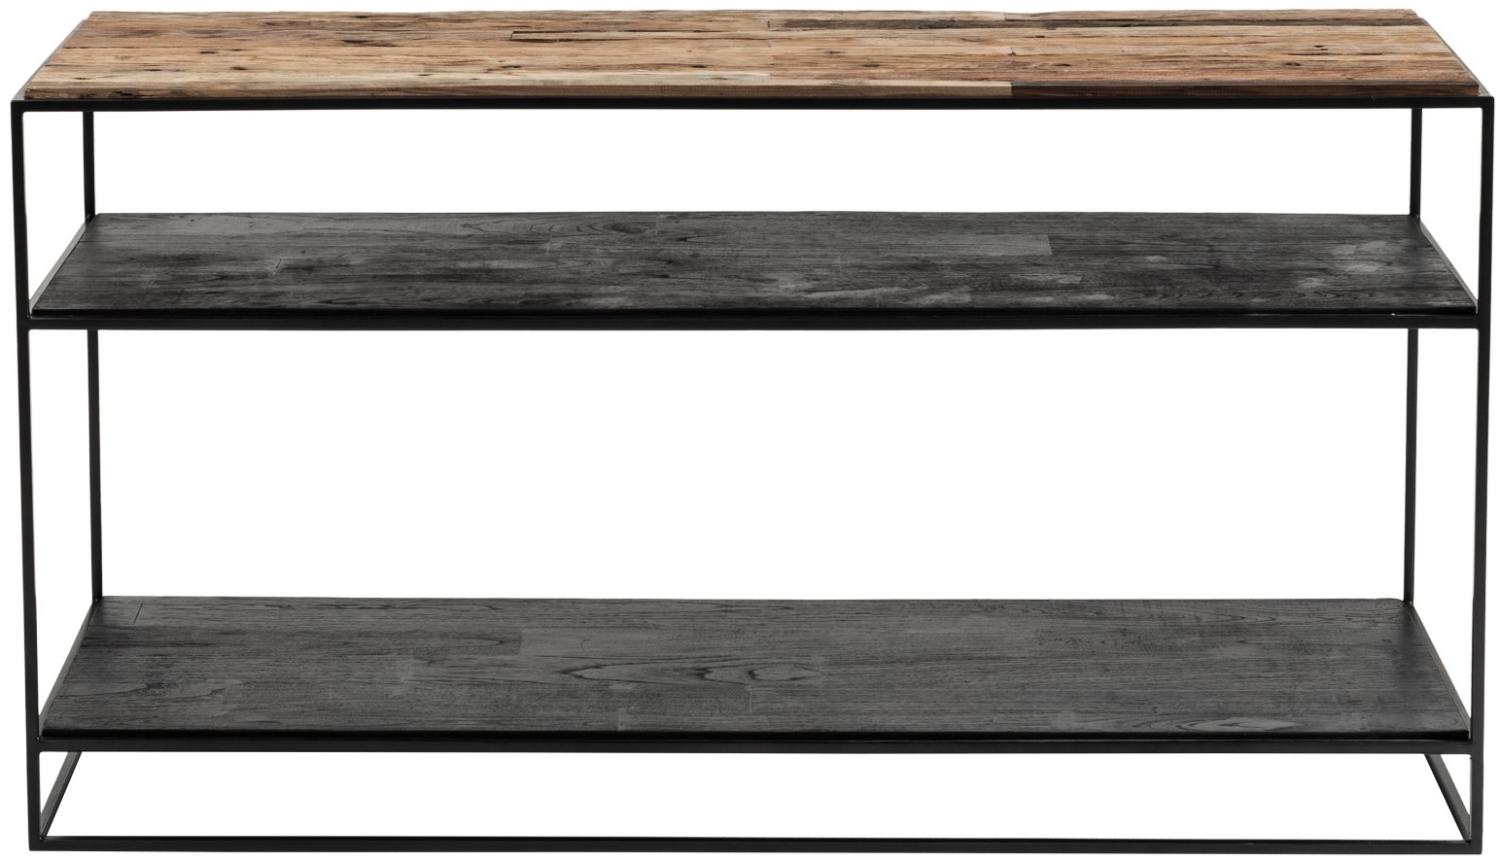 Rustika Konsolentisch rustikal Bootsholz schwarz Holz Konsole Schminktisch Tisch Bild 1